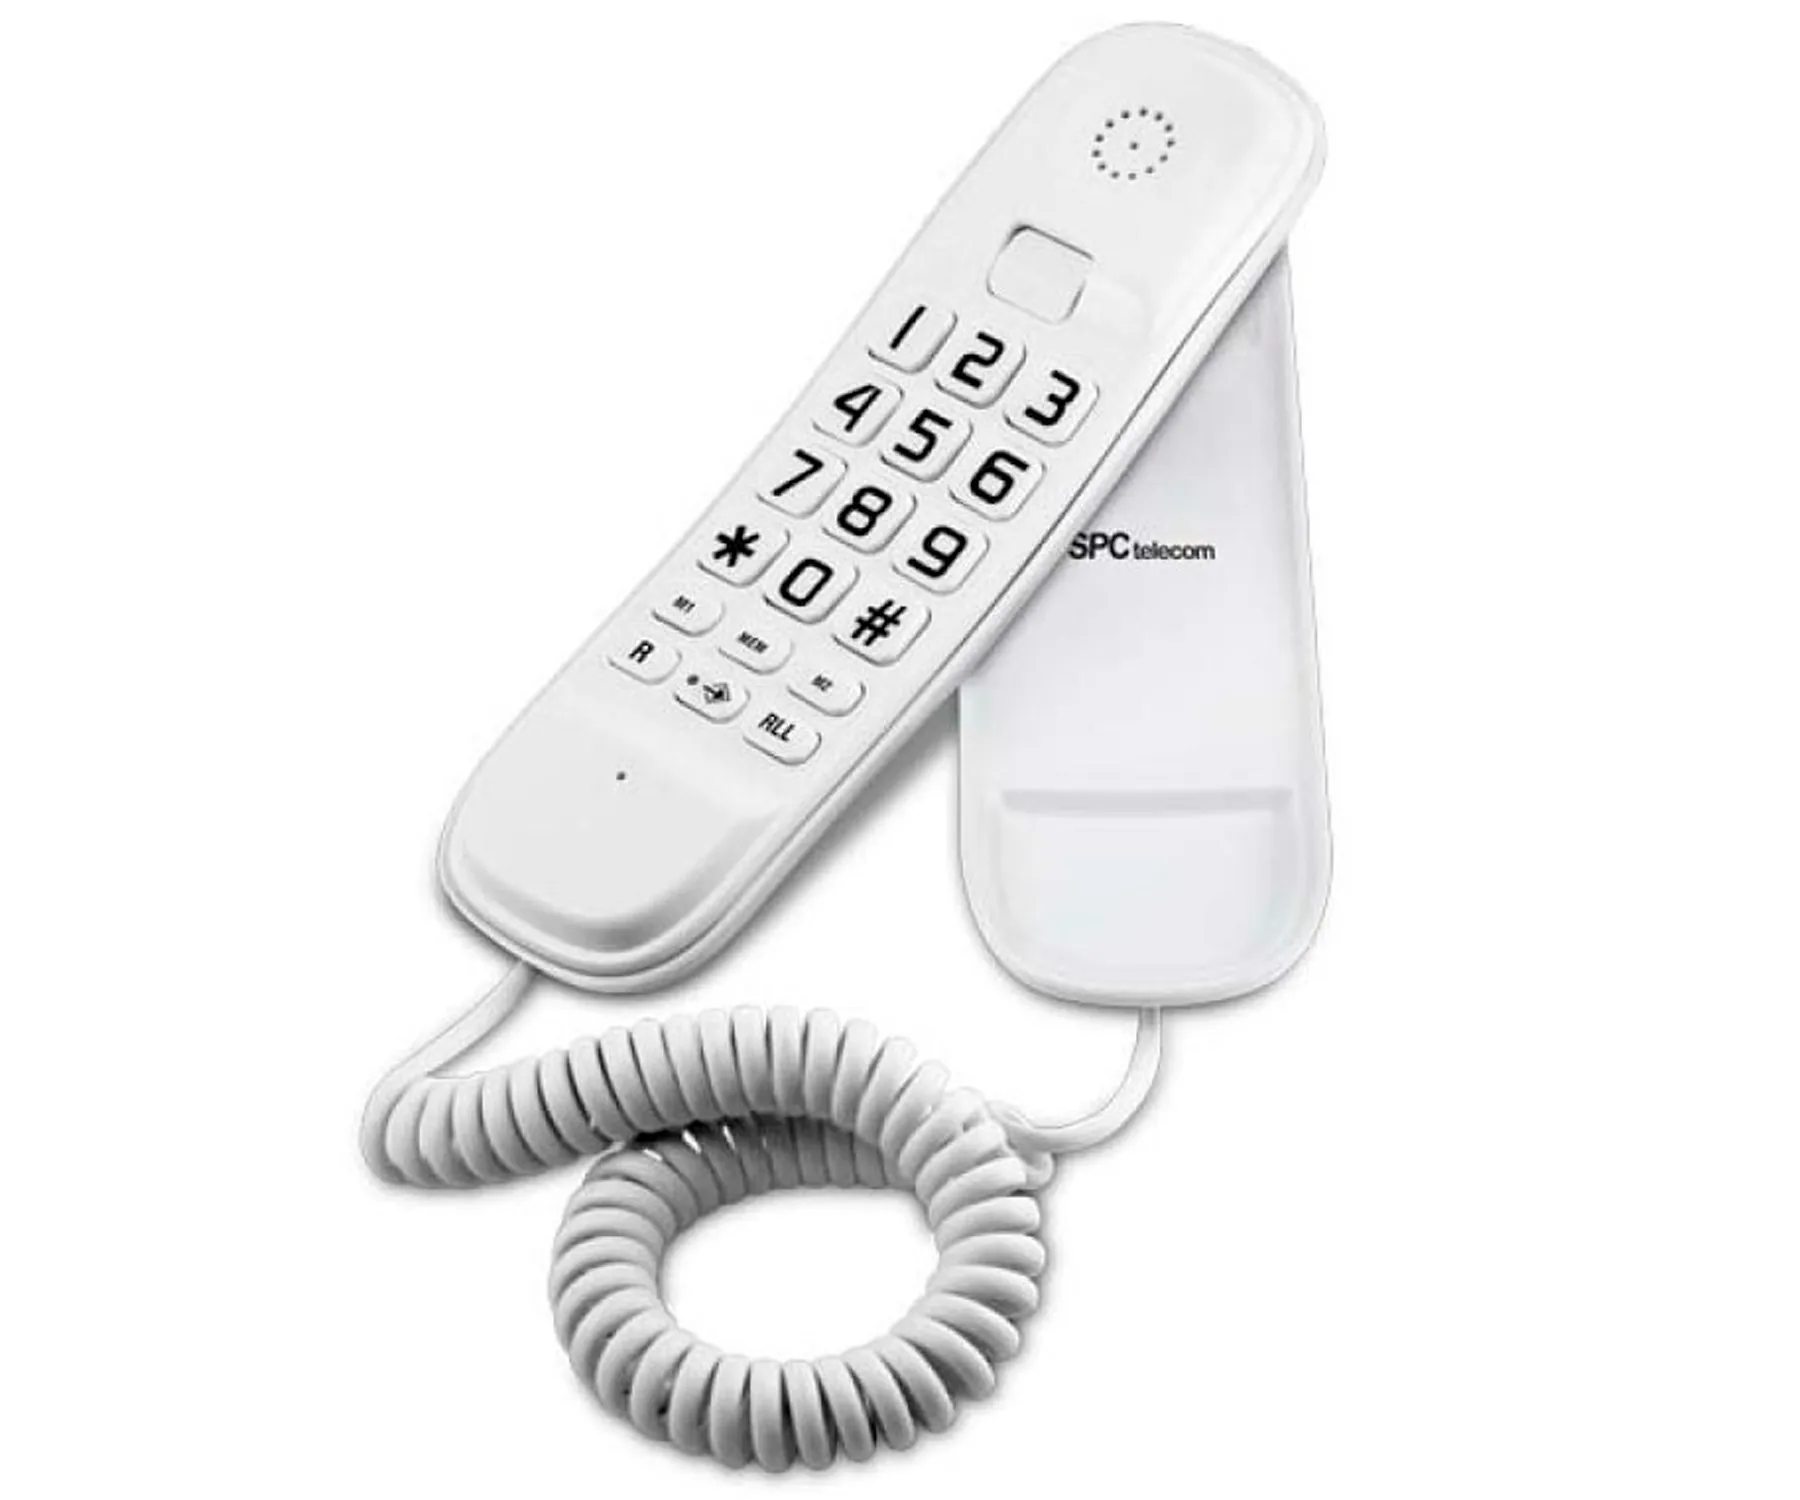 SPC Original Teléfono Fijo Blanco